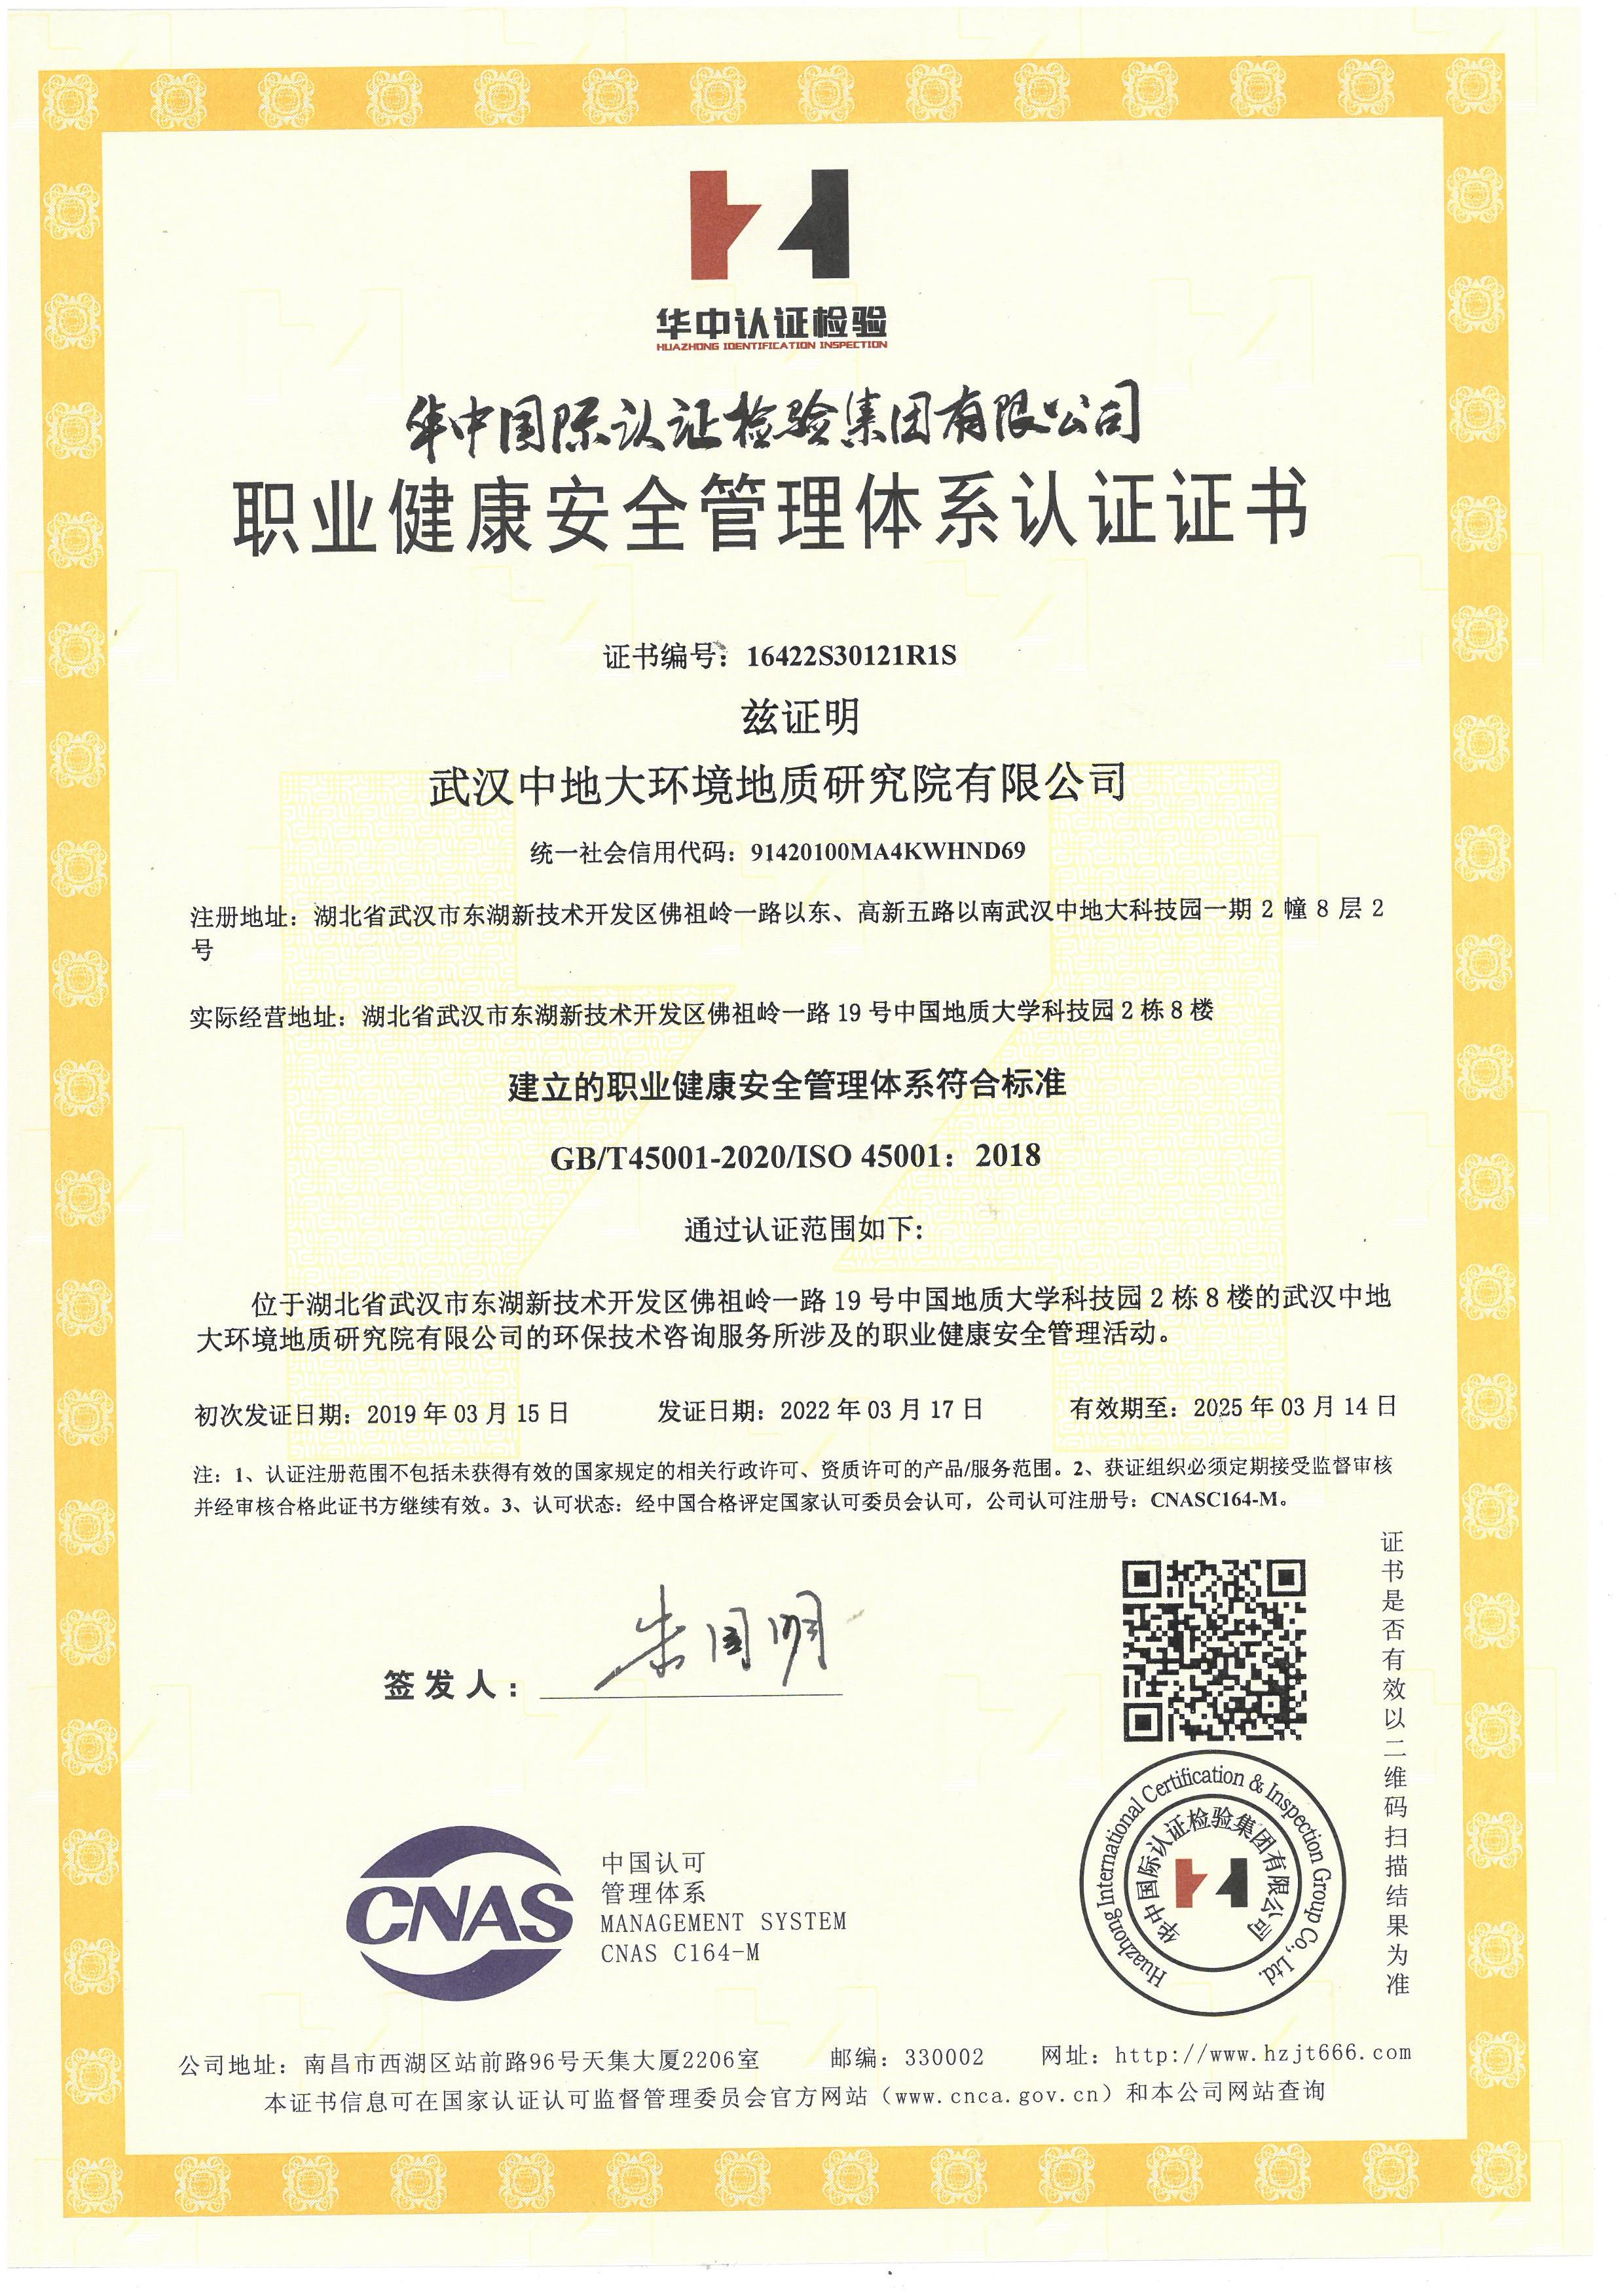     职业健康安全管理体系认证证书